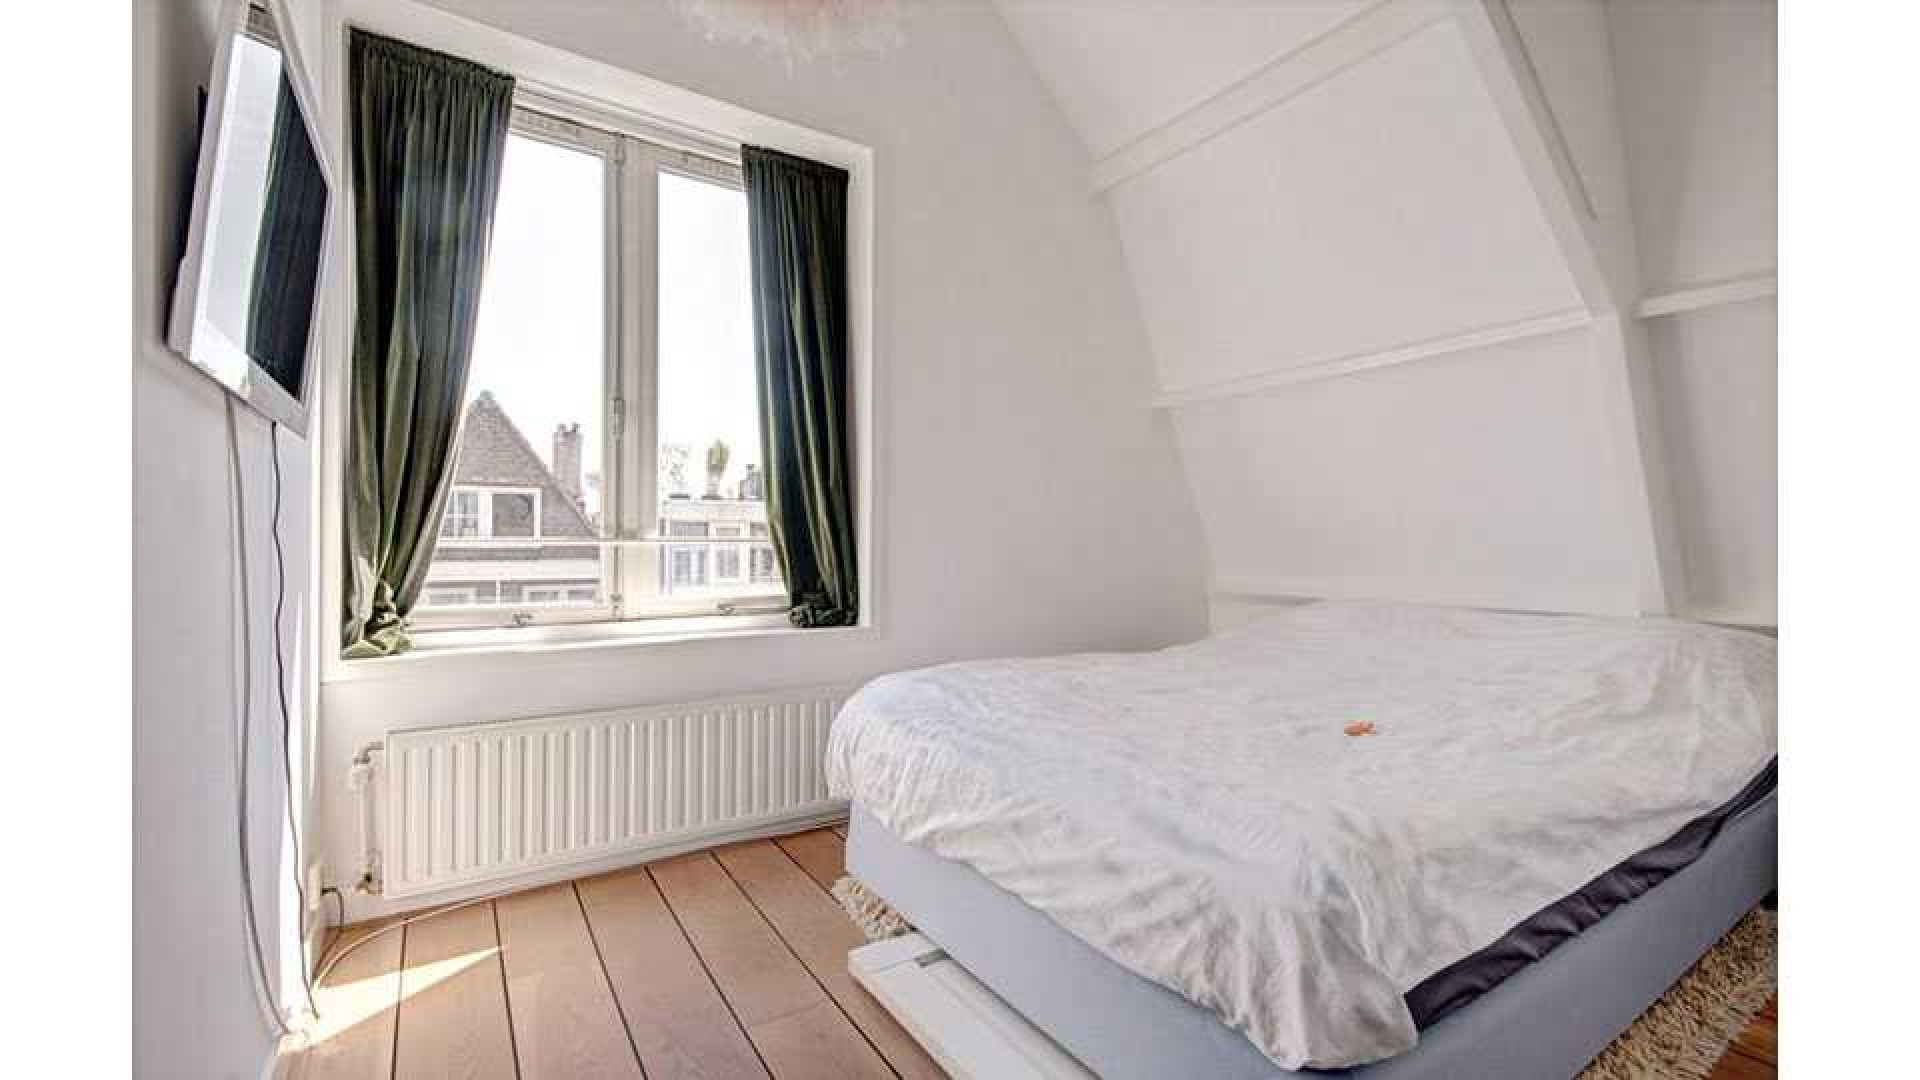 Stacey Rookhuizen verkoopt haar mini penthouse zwaar boven de vraagprijs. Zie foto's